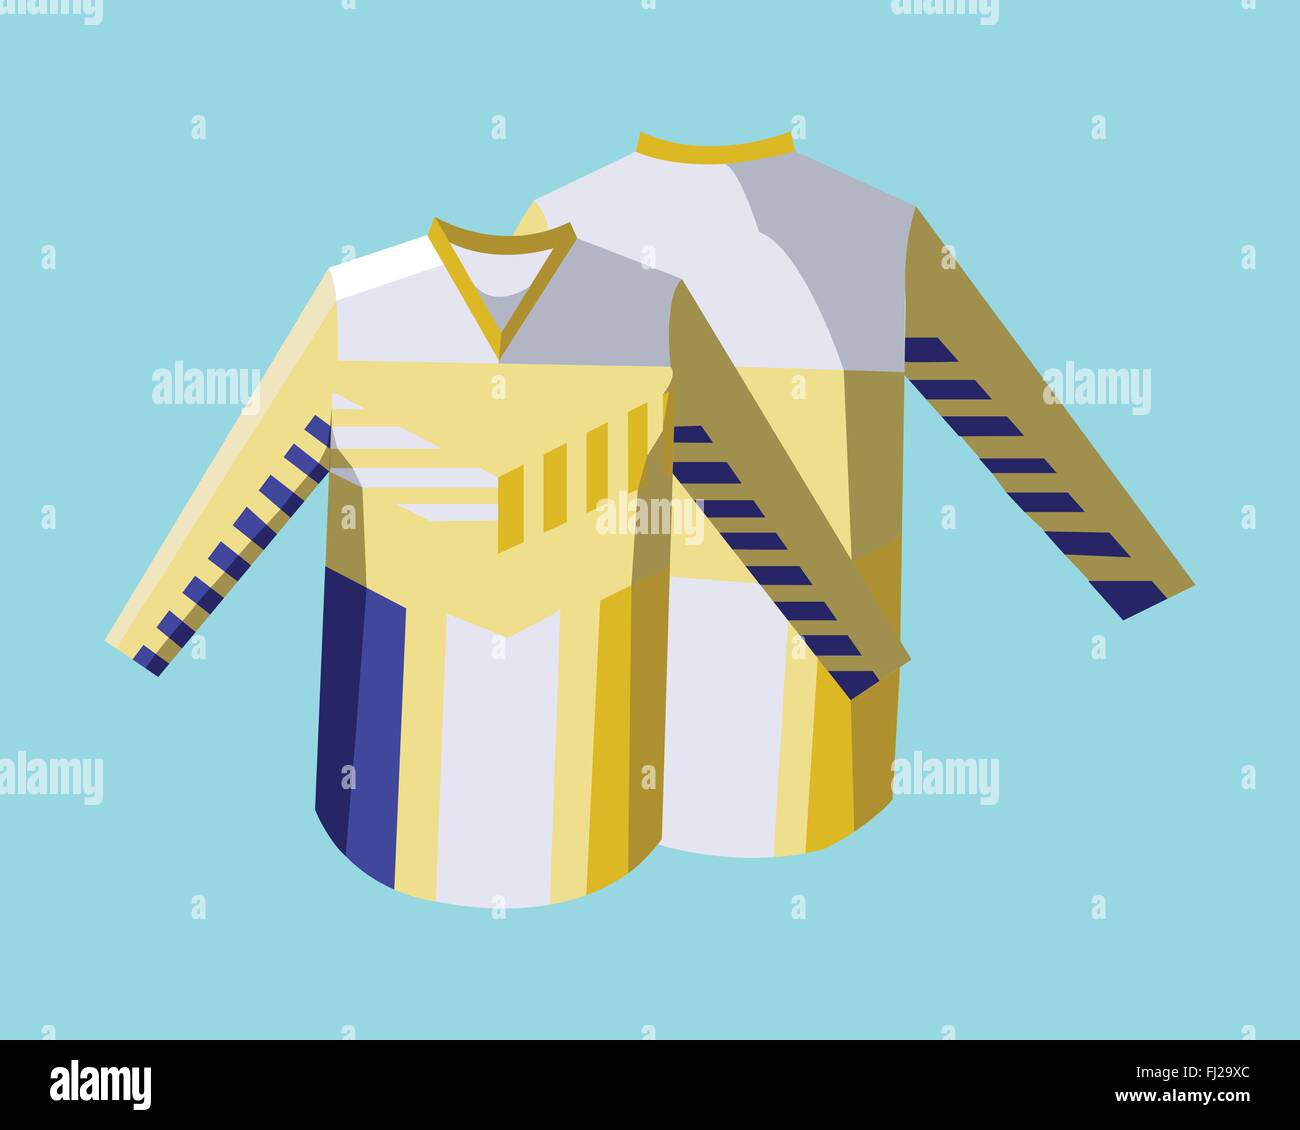 Eishockey Pullover Uniform blau und Gelb Illustration.  Aktivität-Sportbekleidung für Männer und jungen. Stilvolles Design für  Sport hoody. Ho Stock-Vektorgrafik - Alamy